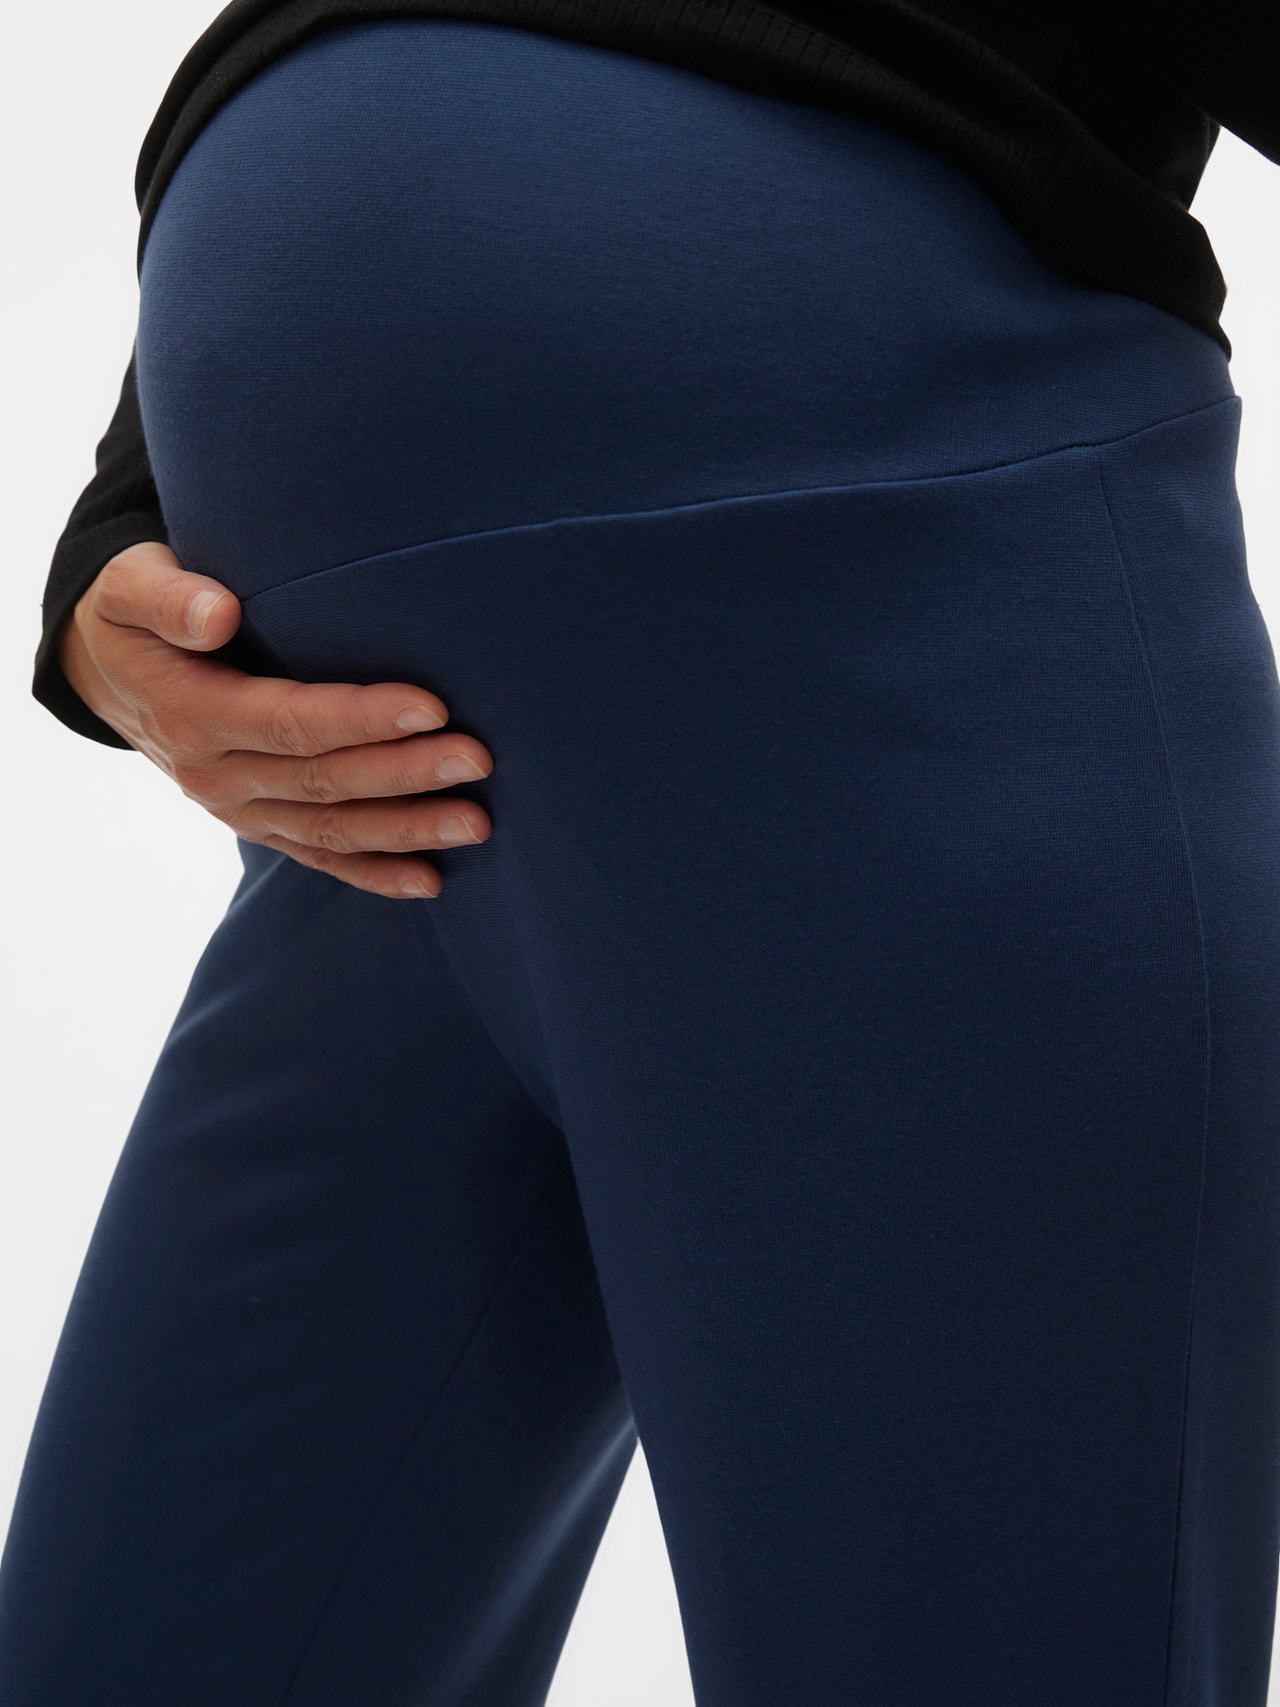 Afsky glemsom ekskrementer Vente-bukser | Mørkeblå | MAMA.LICIOUS®